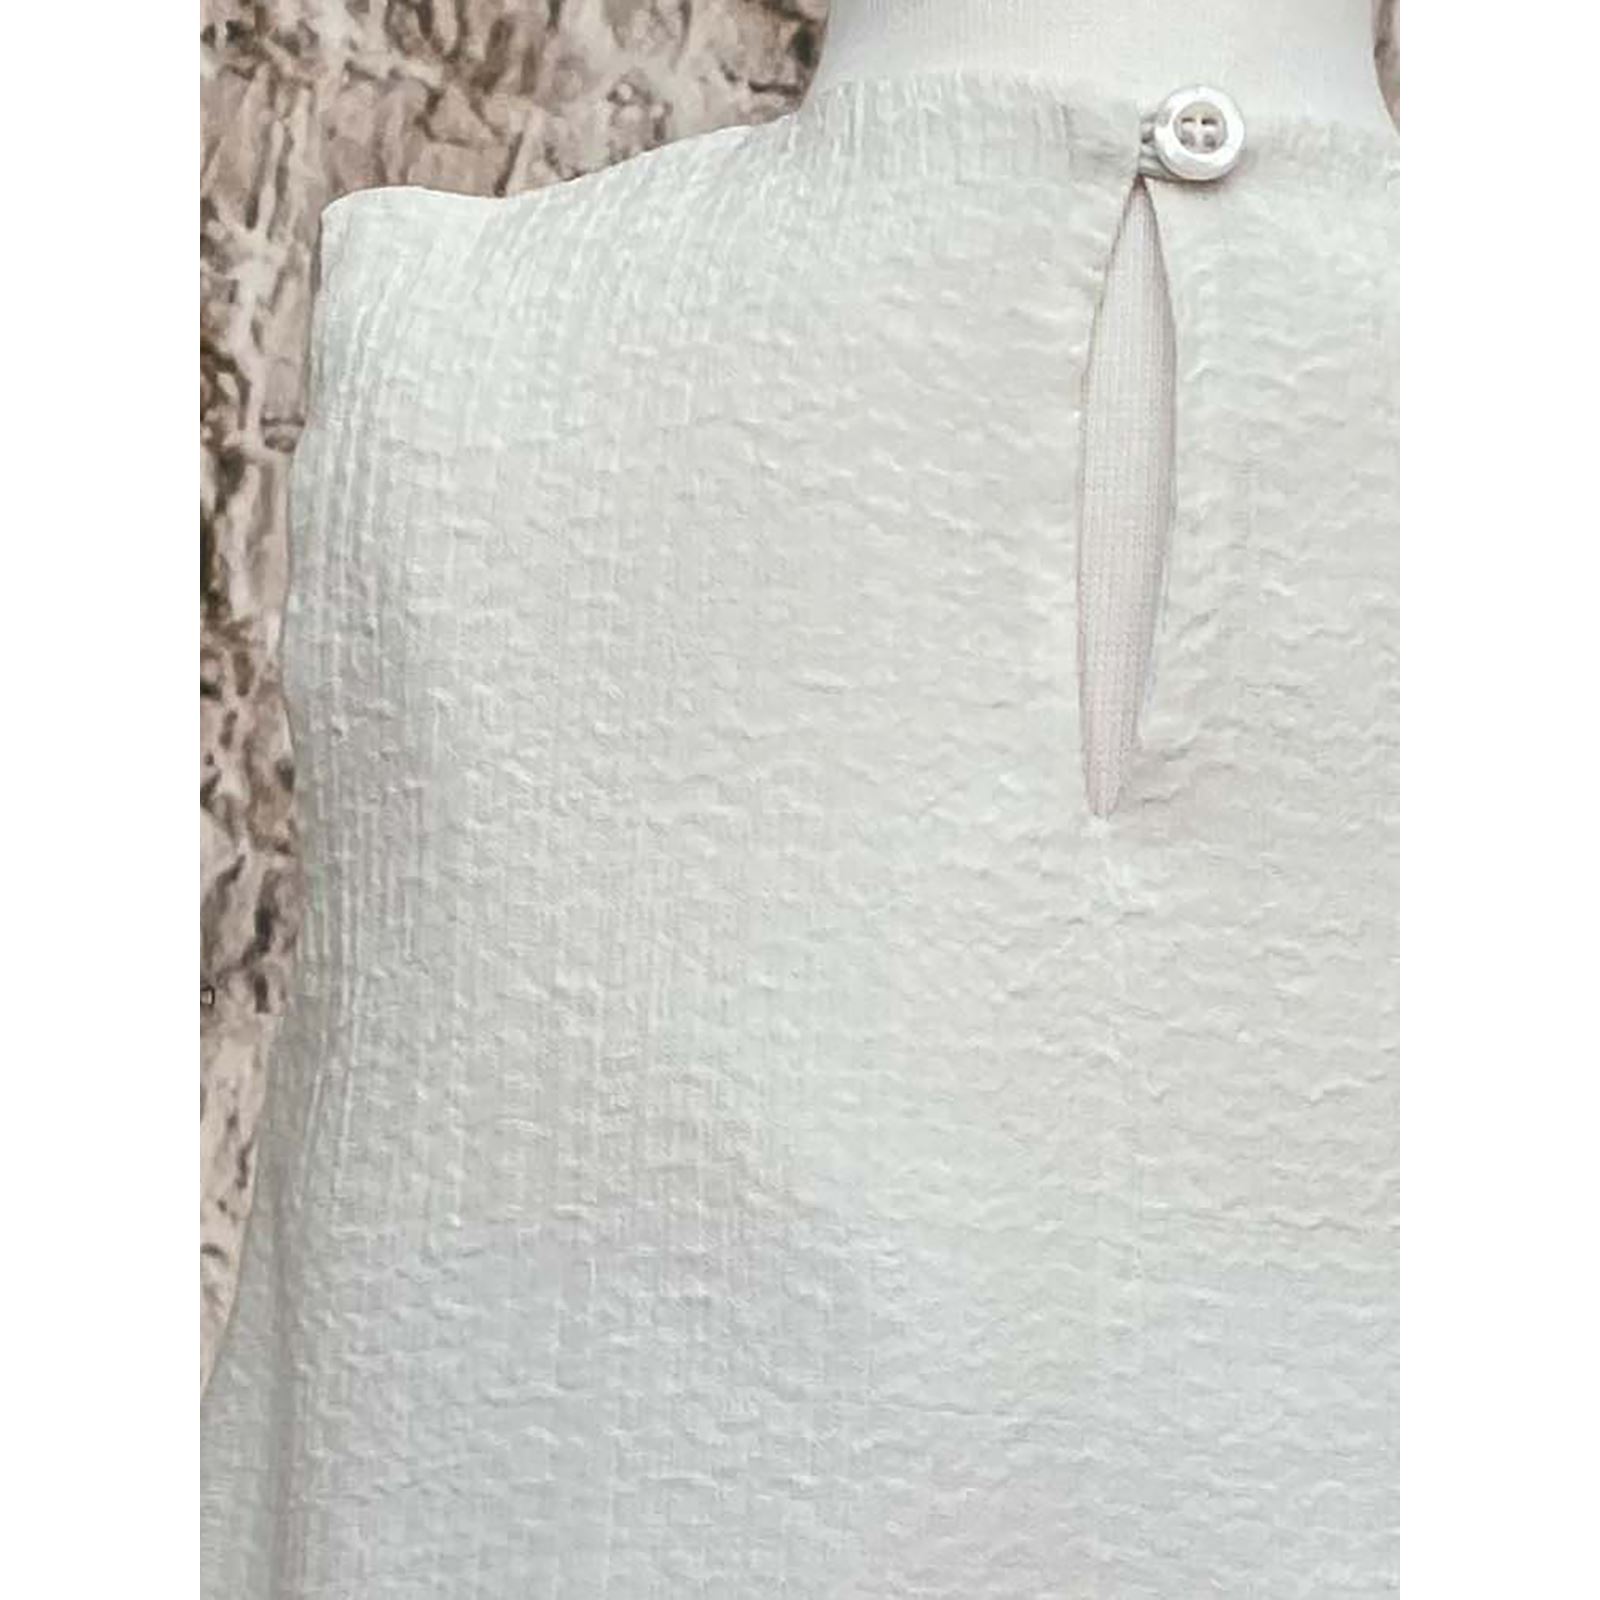 Shecco Babba Kız Çocuk Eteği Fırfırlı Elbise 6-10 Yaş Beyaz